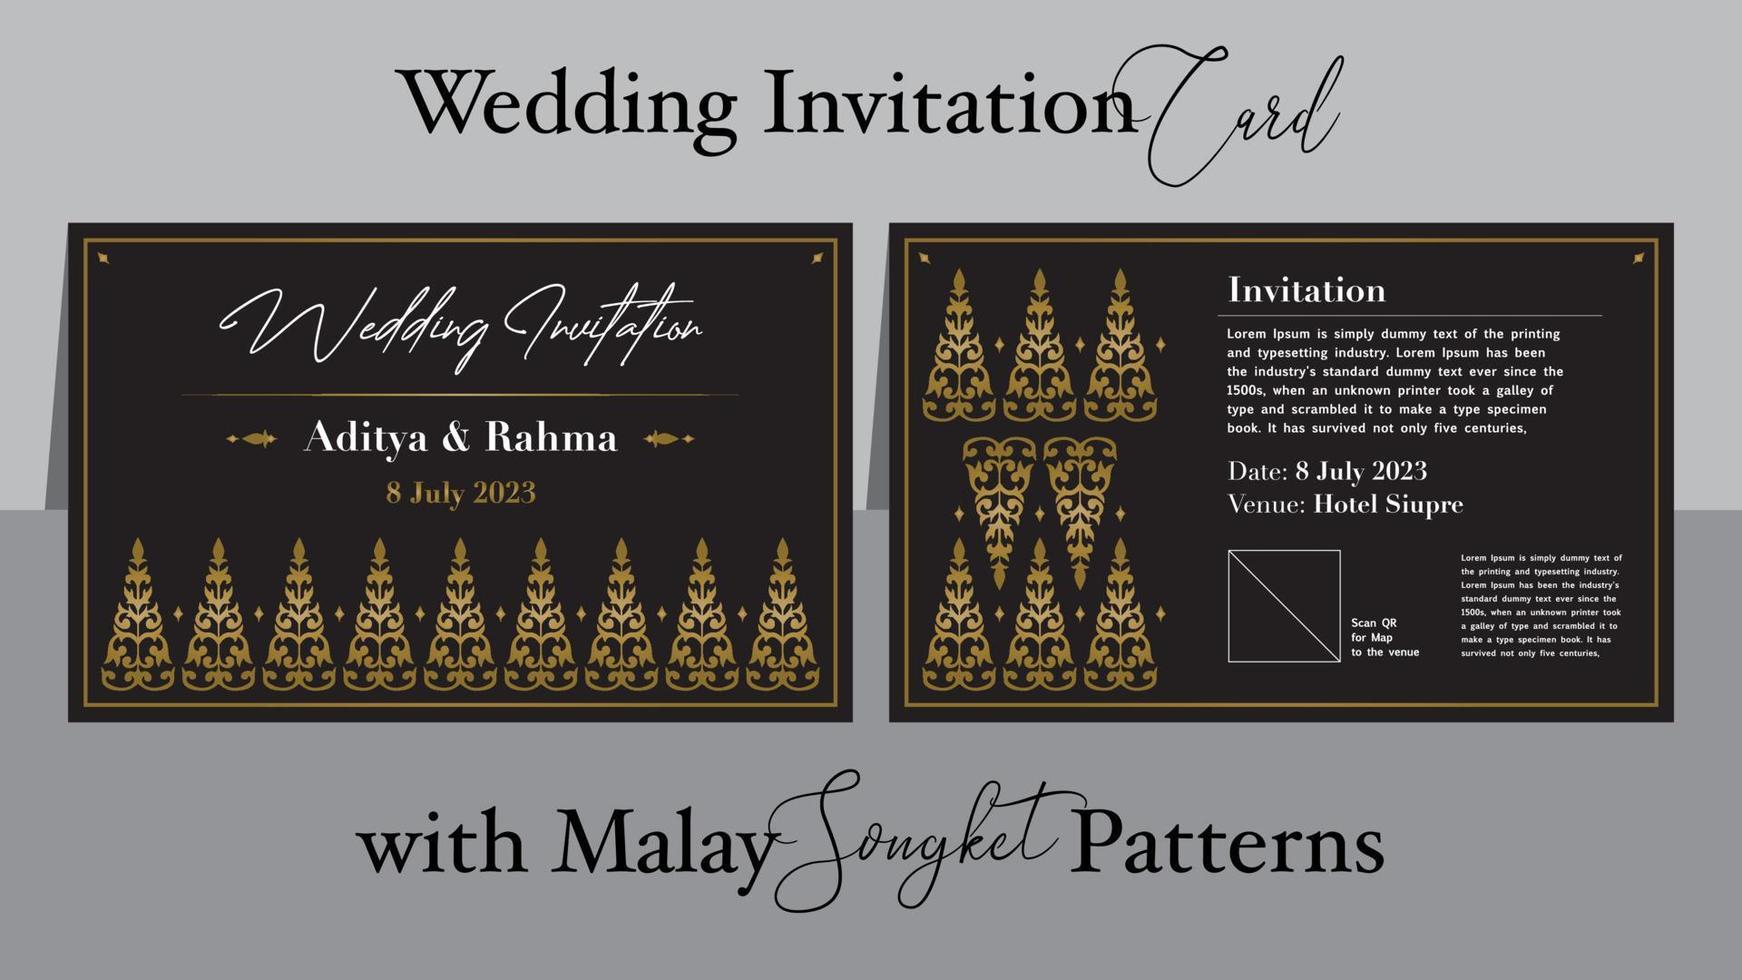 Hochzeit Einladung mit malaiisch Songket Muster, Vektor, traditionell Melayu undangan pernikahan vektor